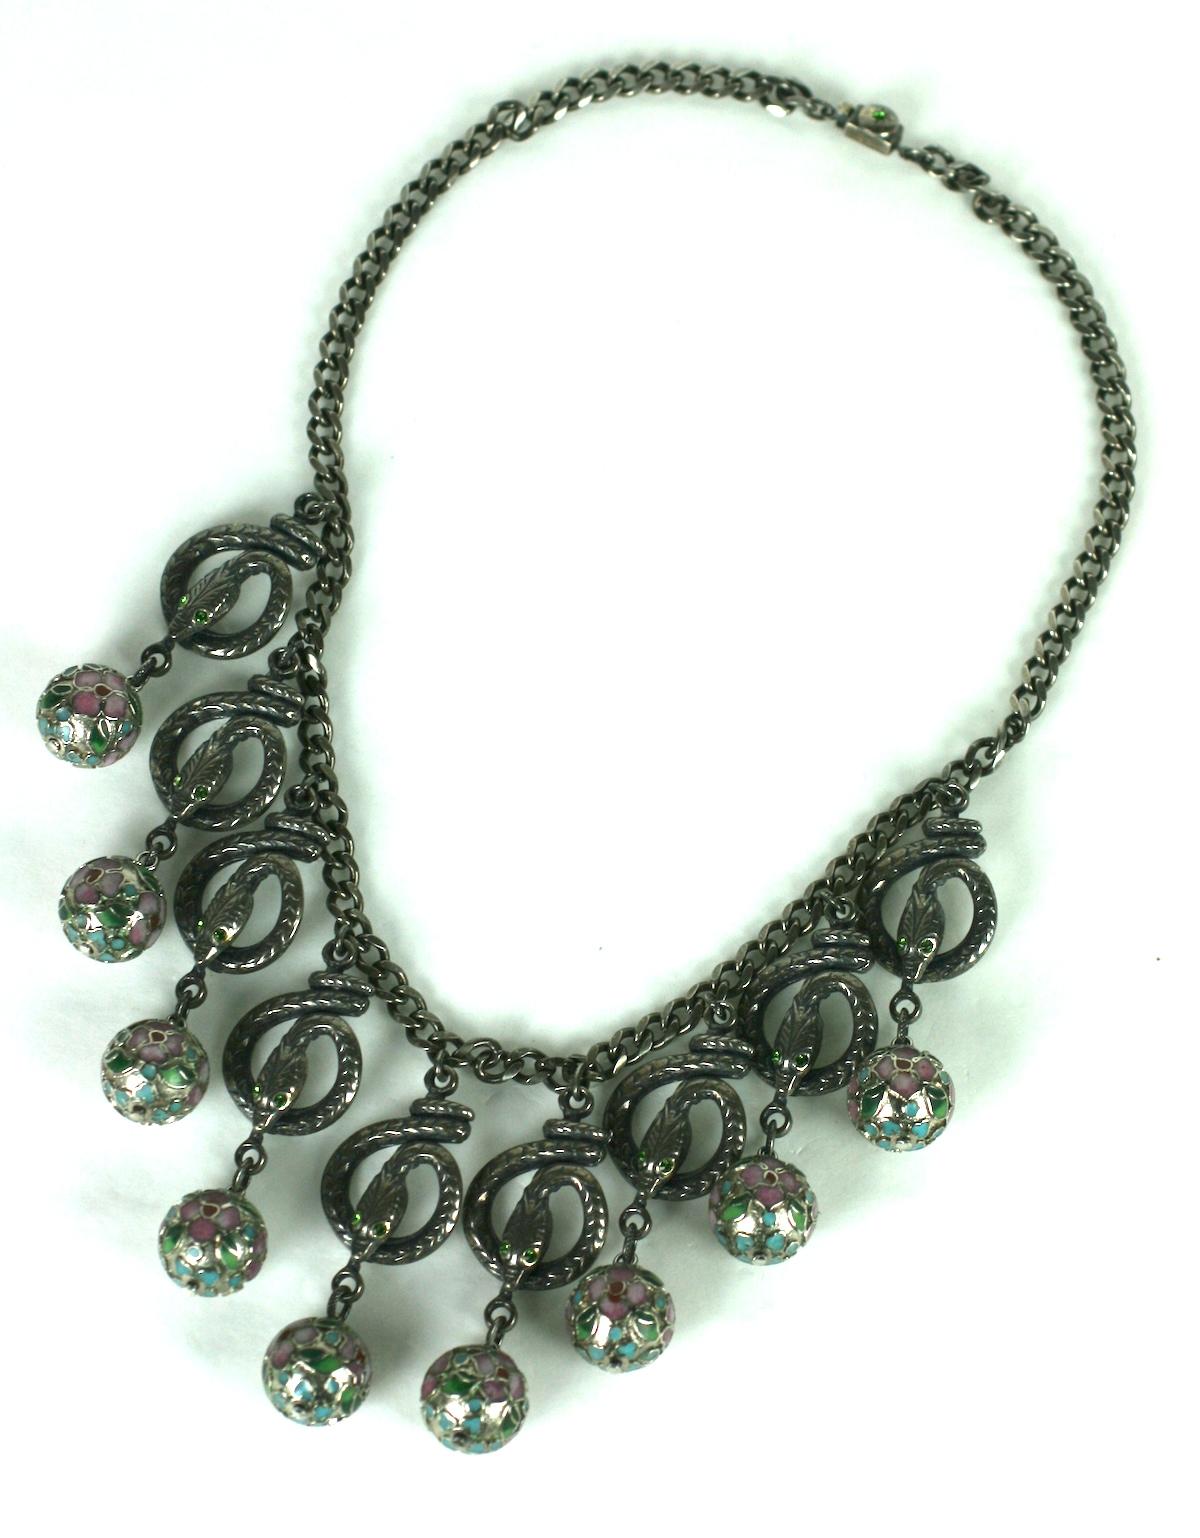 Eygptian Revival Askew London Snake Drop Necklace mit Emaille-Cloisonné-Perlen in blassen Rosa- und Grüntönen.  Versilbertes Antik-Finish. Die Schlangen sind mit Augen in Smaragdkristall besetzt.
1980er Jahre UK.   16